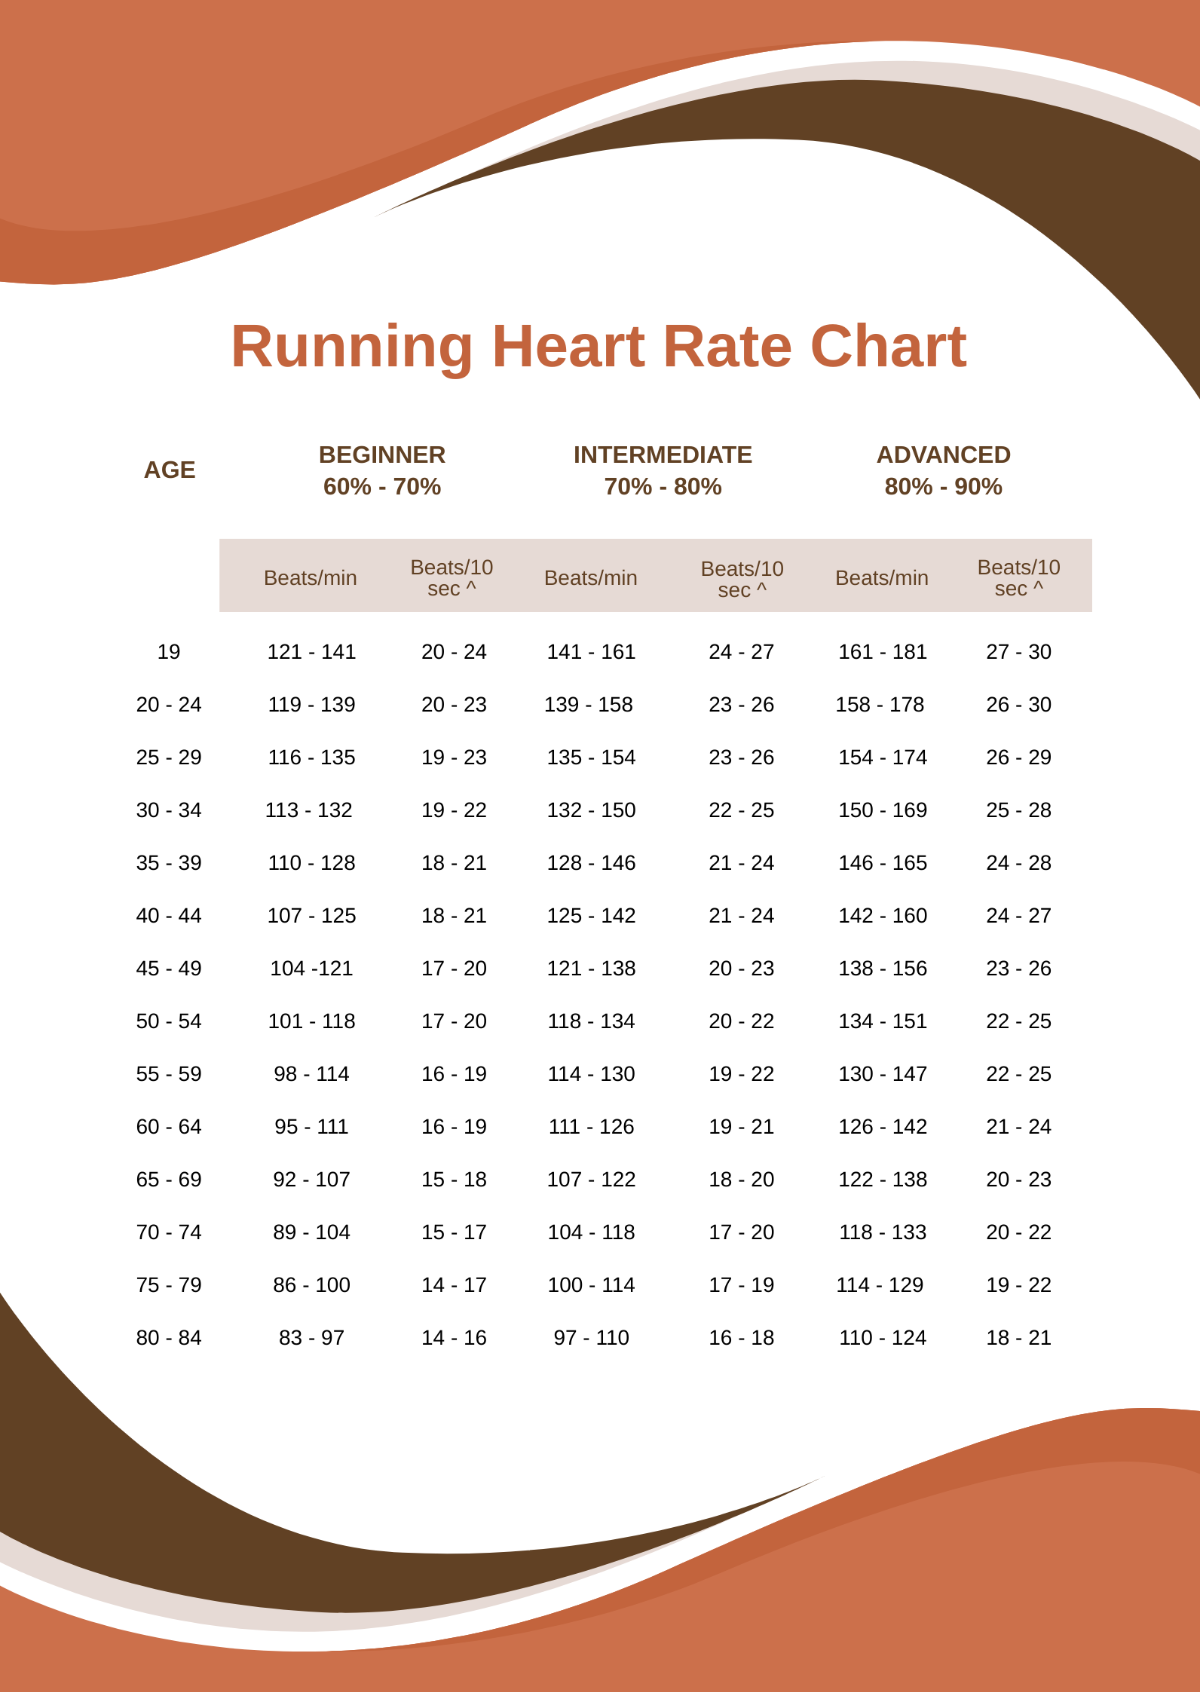 Running Heart Rate Chart Template